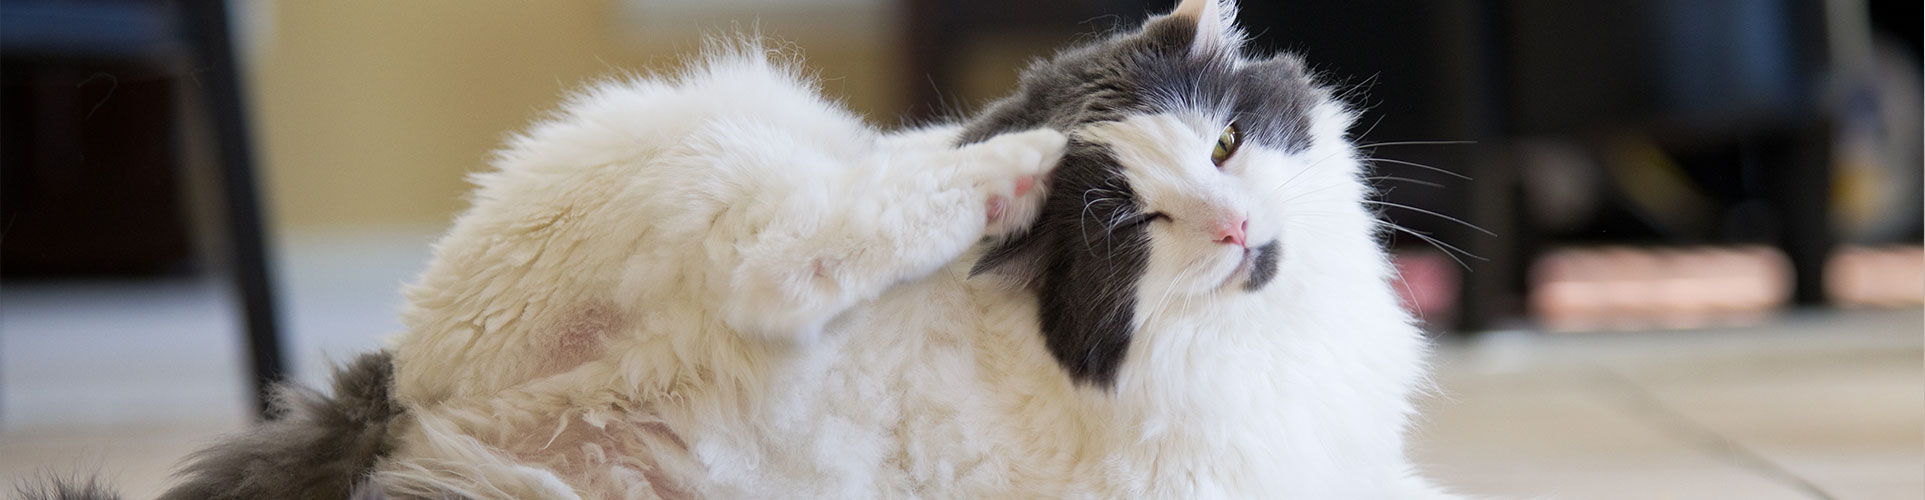 Pet Dermatology in Lewisville: Cat Scratching Ear